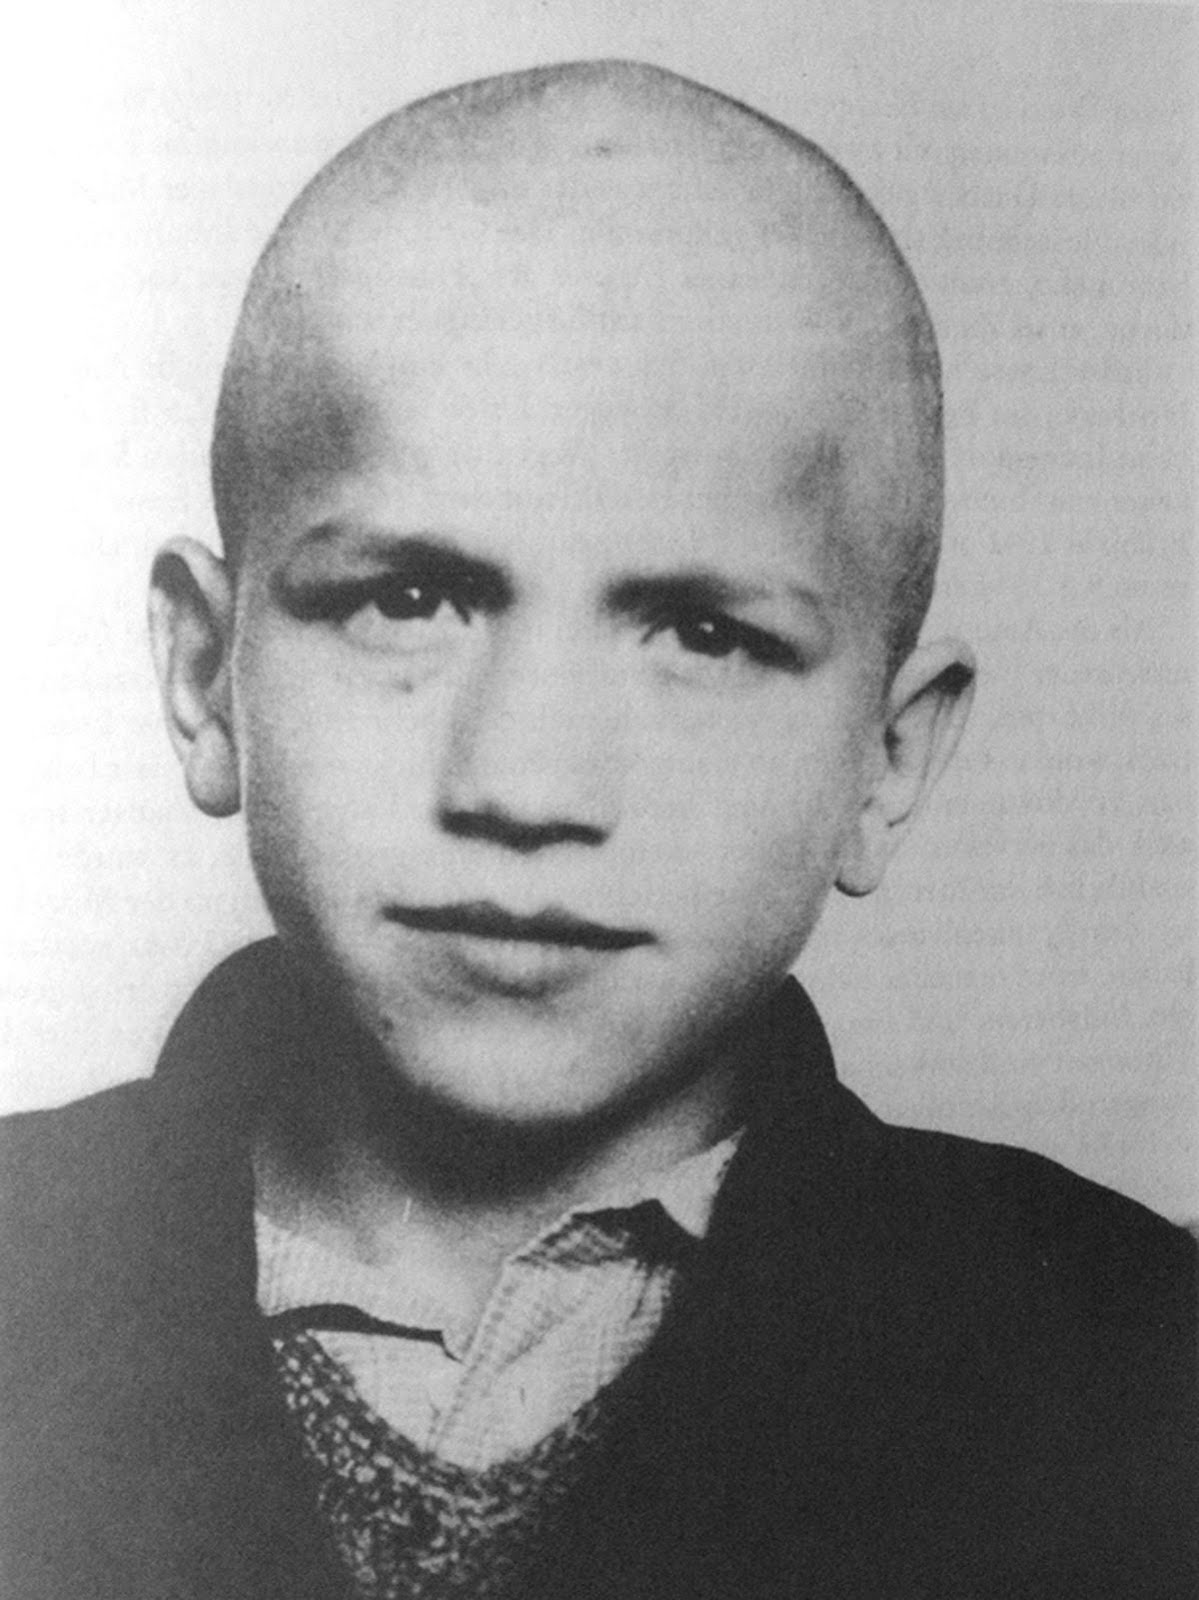 Ernst Lossa, ragazzo Jenisch ucciso a quattordici anni durante la seconda fase dell'eutanasia nazista